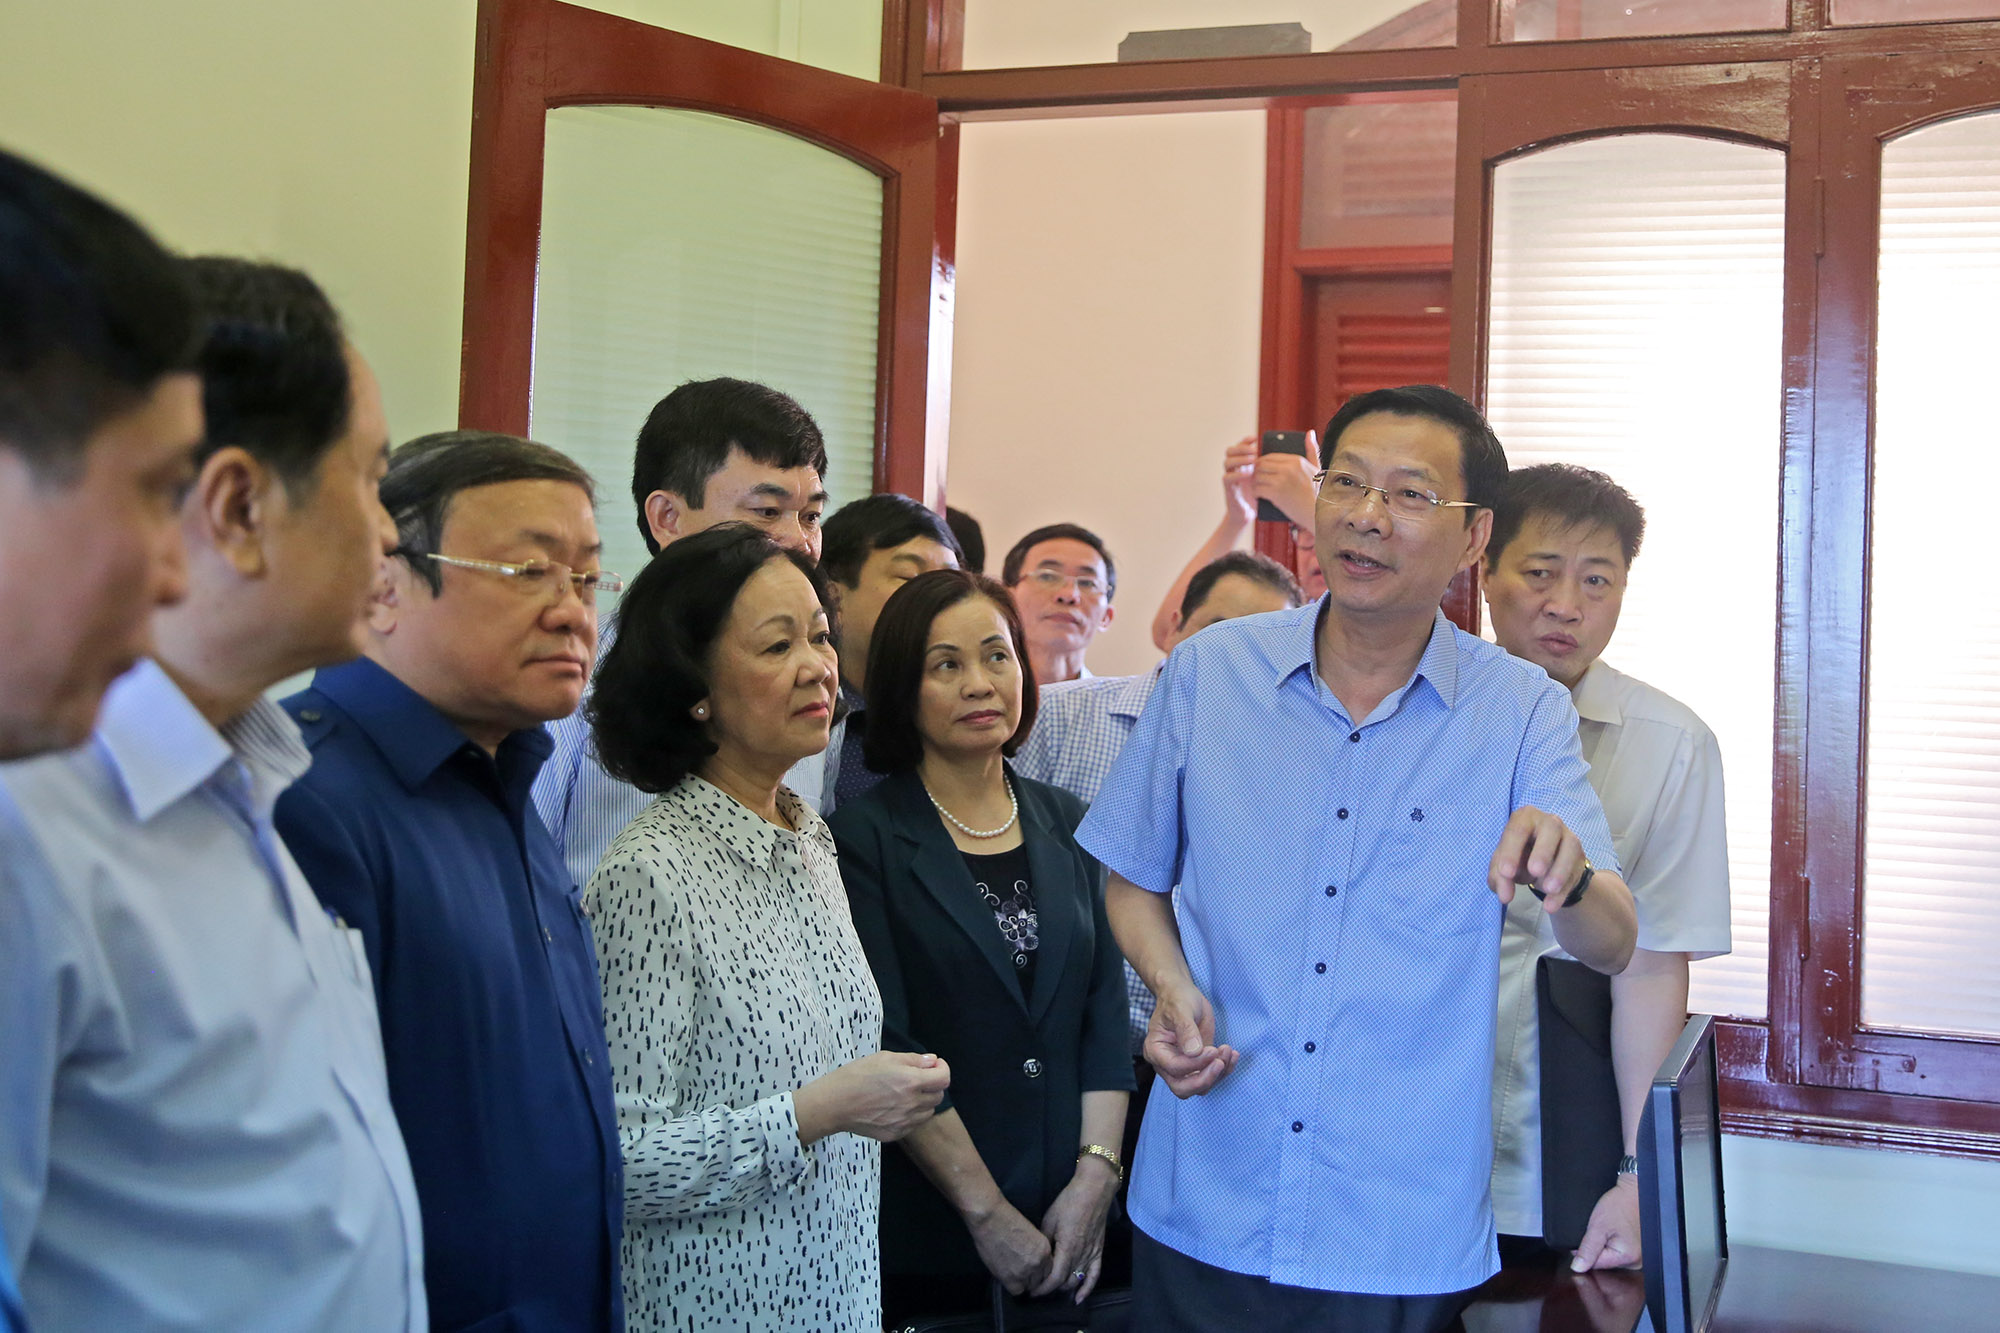 Đồng chí Nguyễn Văn Đọc, Bí thư Tỉnh ủy giới thiệu với các thành viên trong đoàn về mô hình cơ quan giúp việc dùng chung.